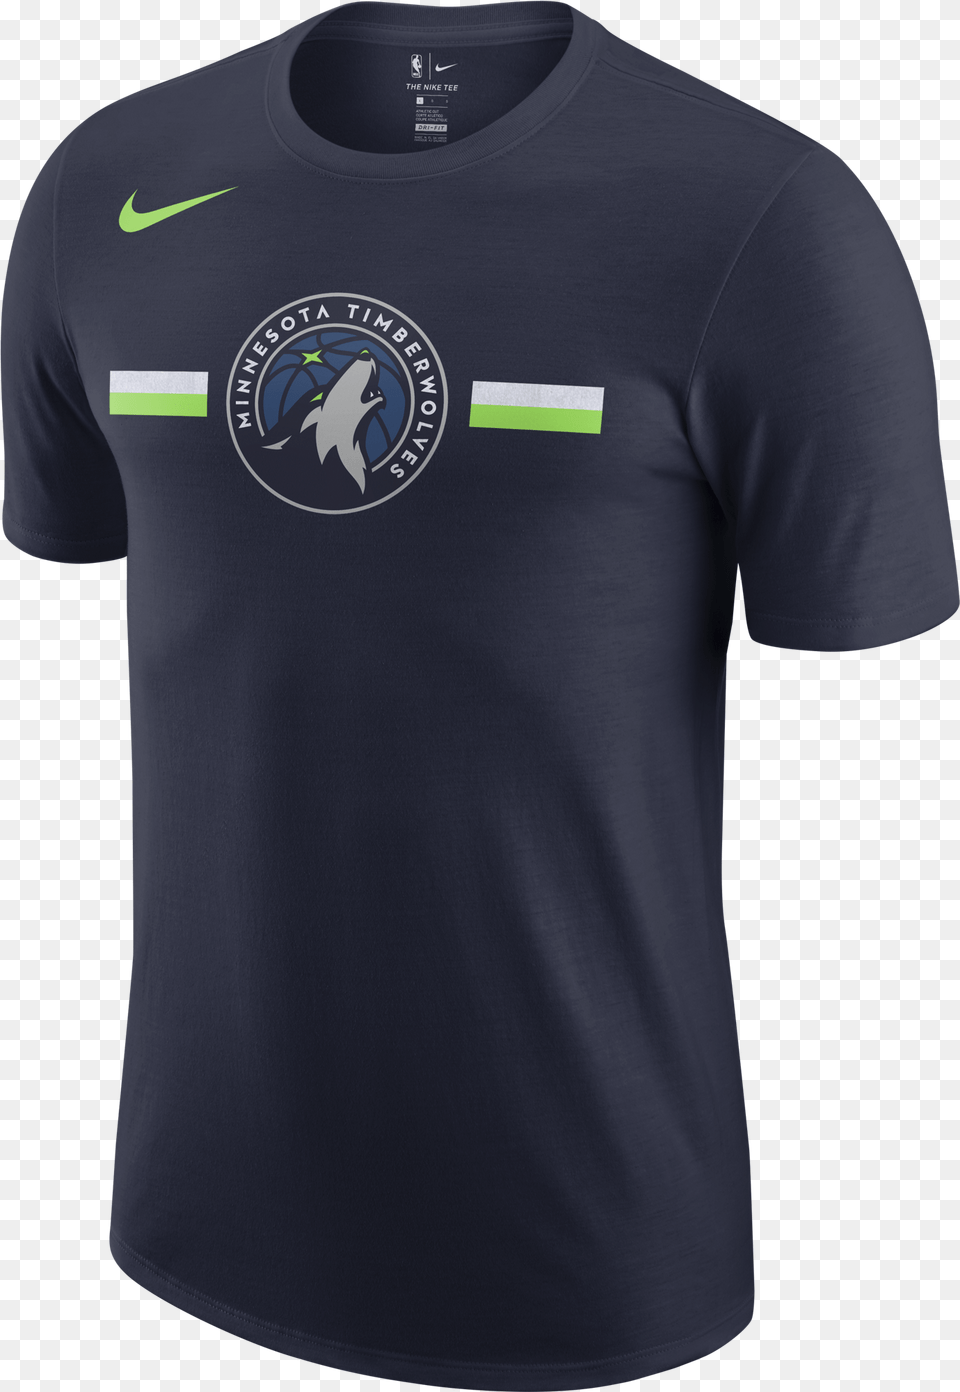 Nike Nba Minnesota Timberwolves Logo Camiseta Nike Utah Jazz, Clothing, Shirt, T-shirt Free Transparent Png